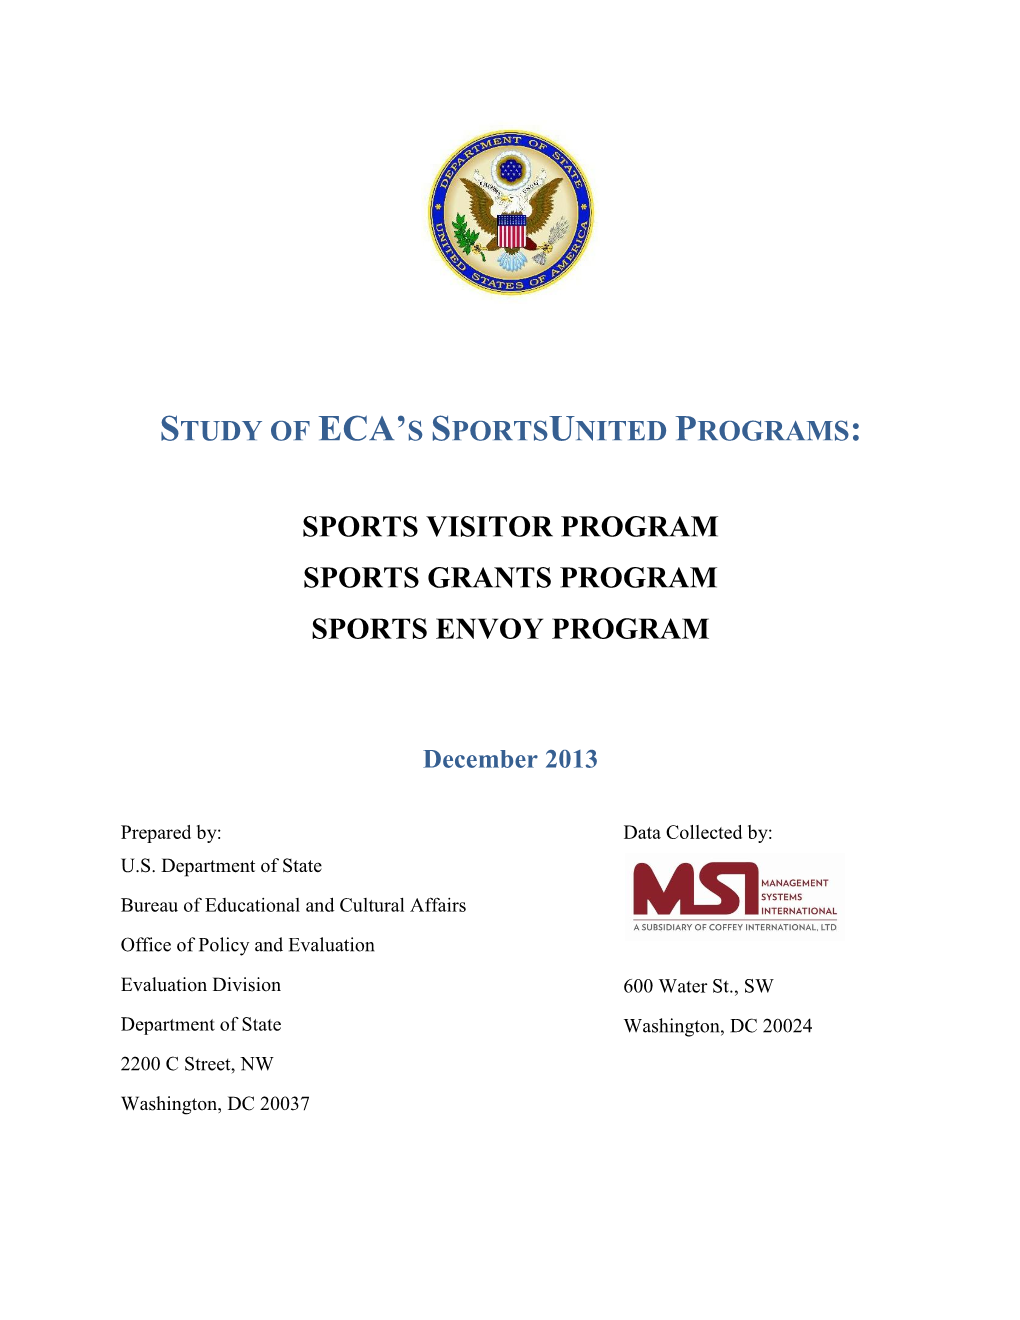 Study of ECA's Sportsunited Programs